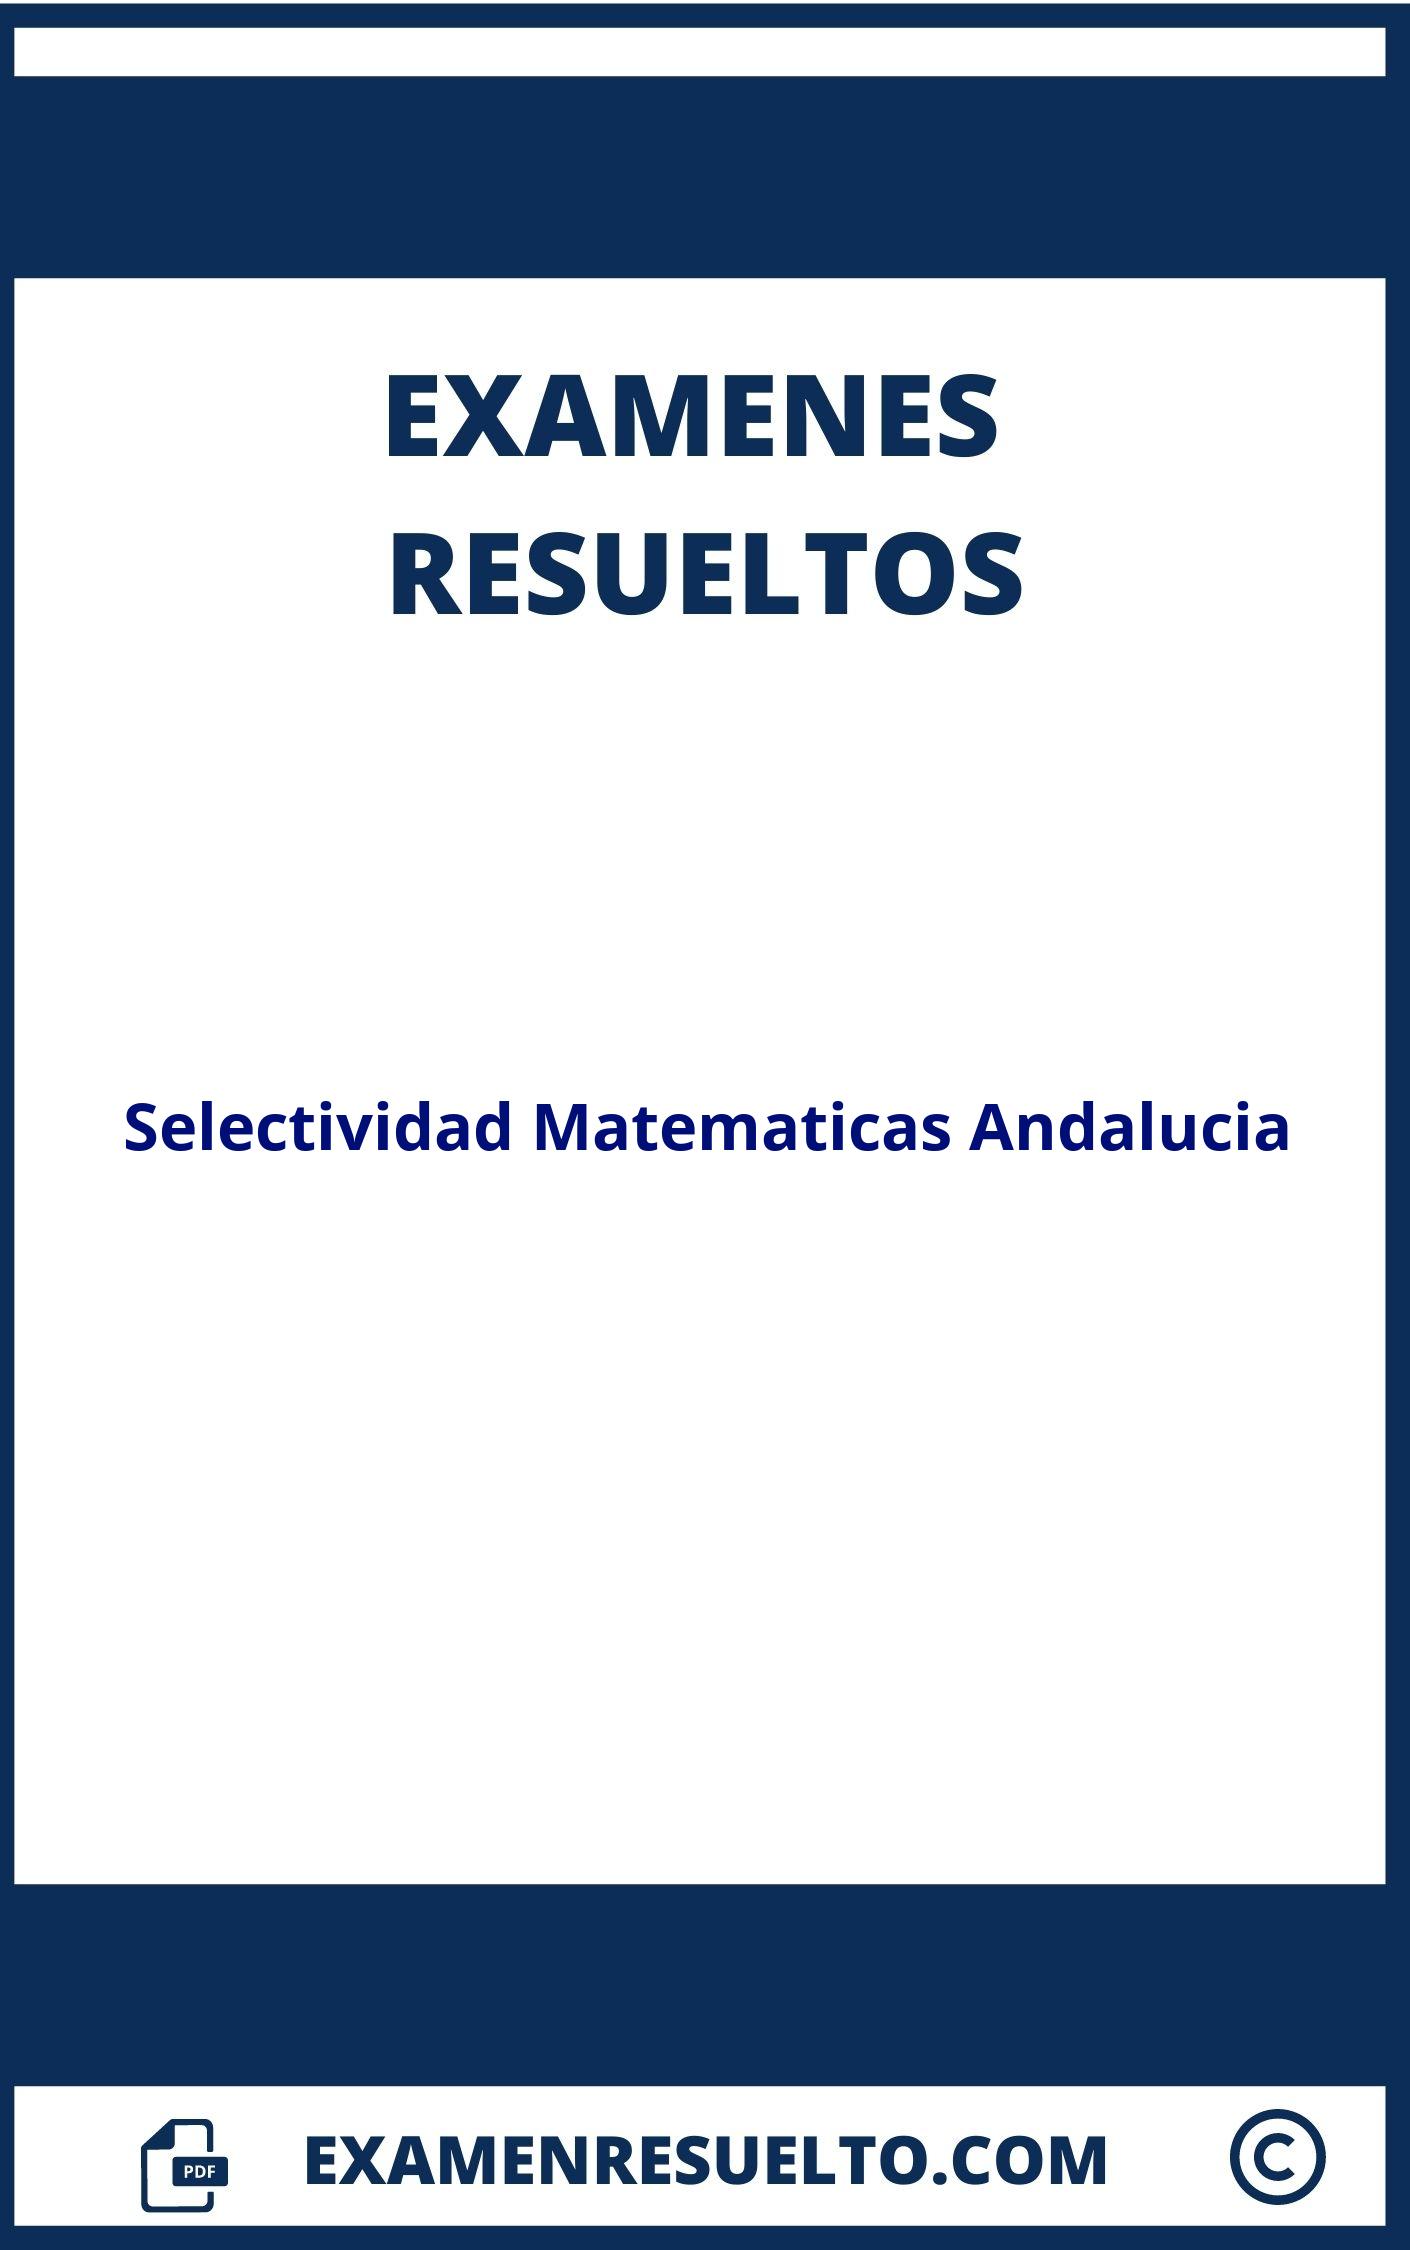 Examenes Selectividad Matematicas Andalucia Resueltos